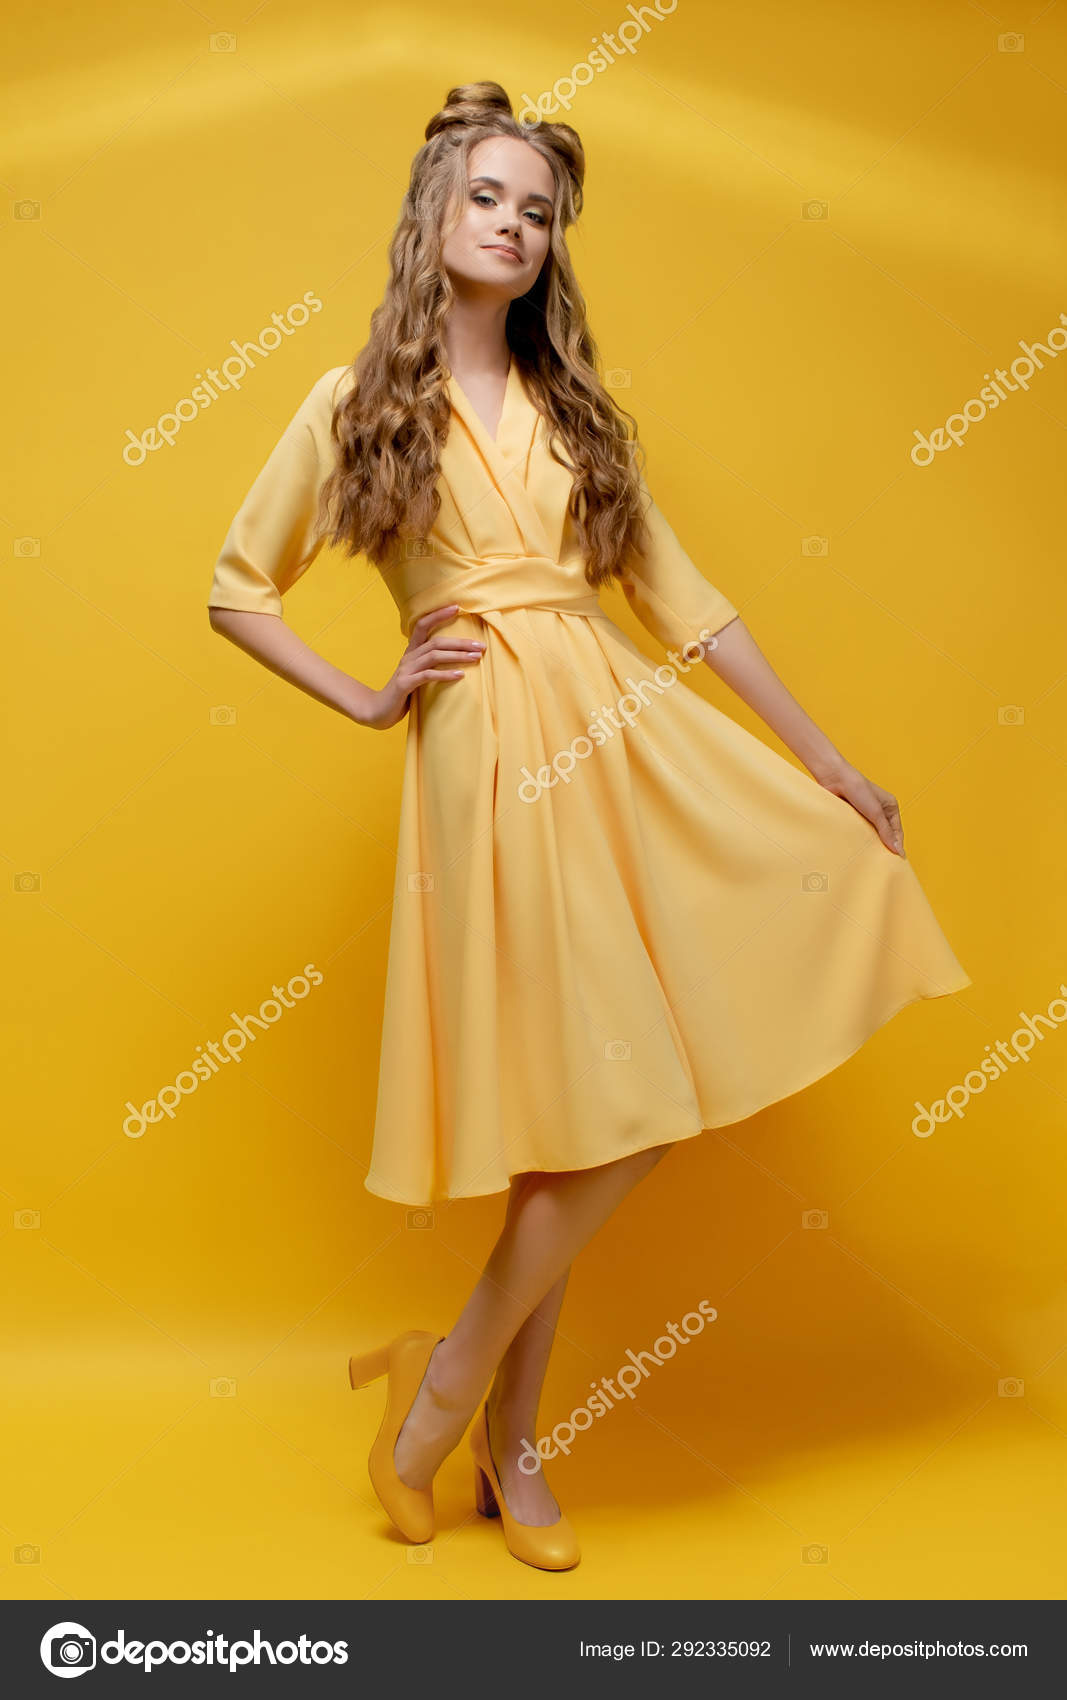 stylish yellow dress